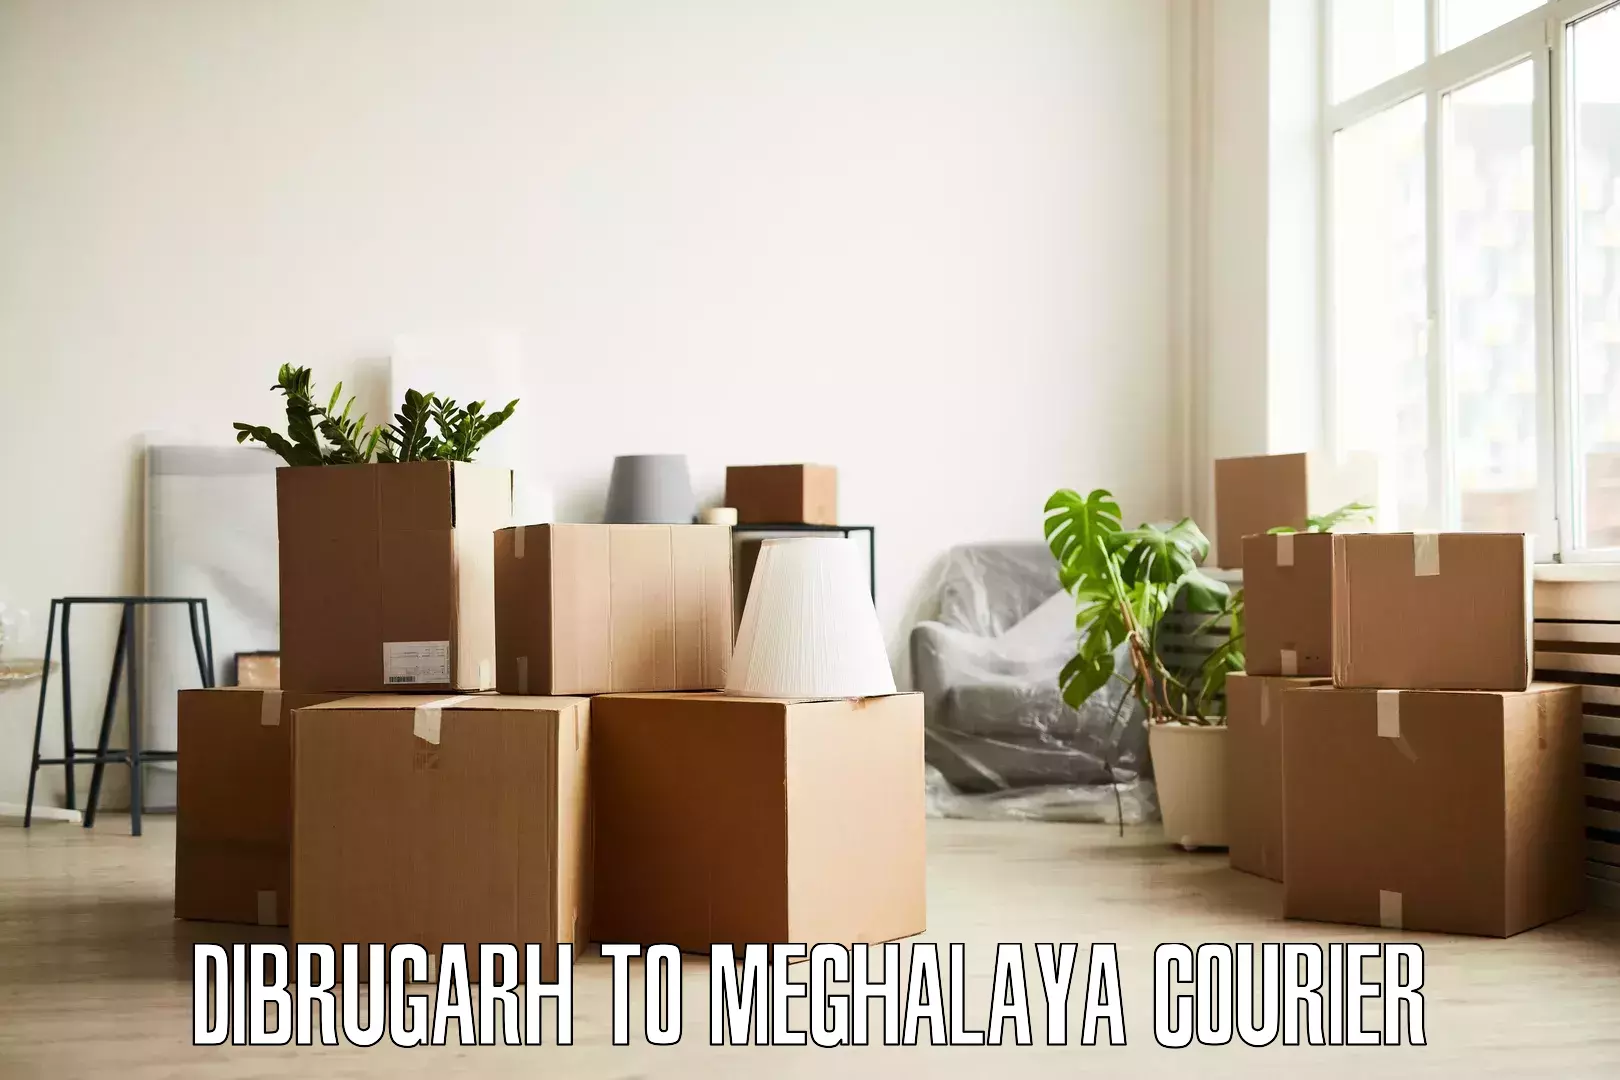 Furniture moving experts Dibrugarh to Meghalaya